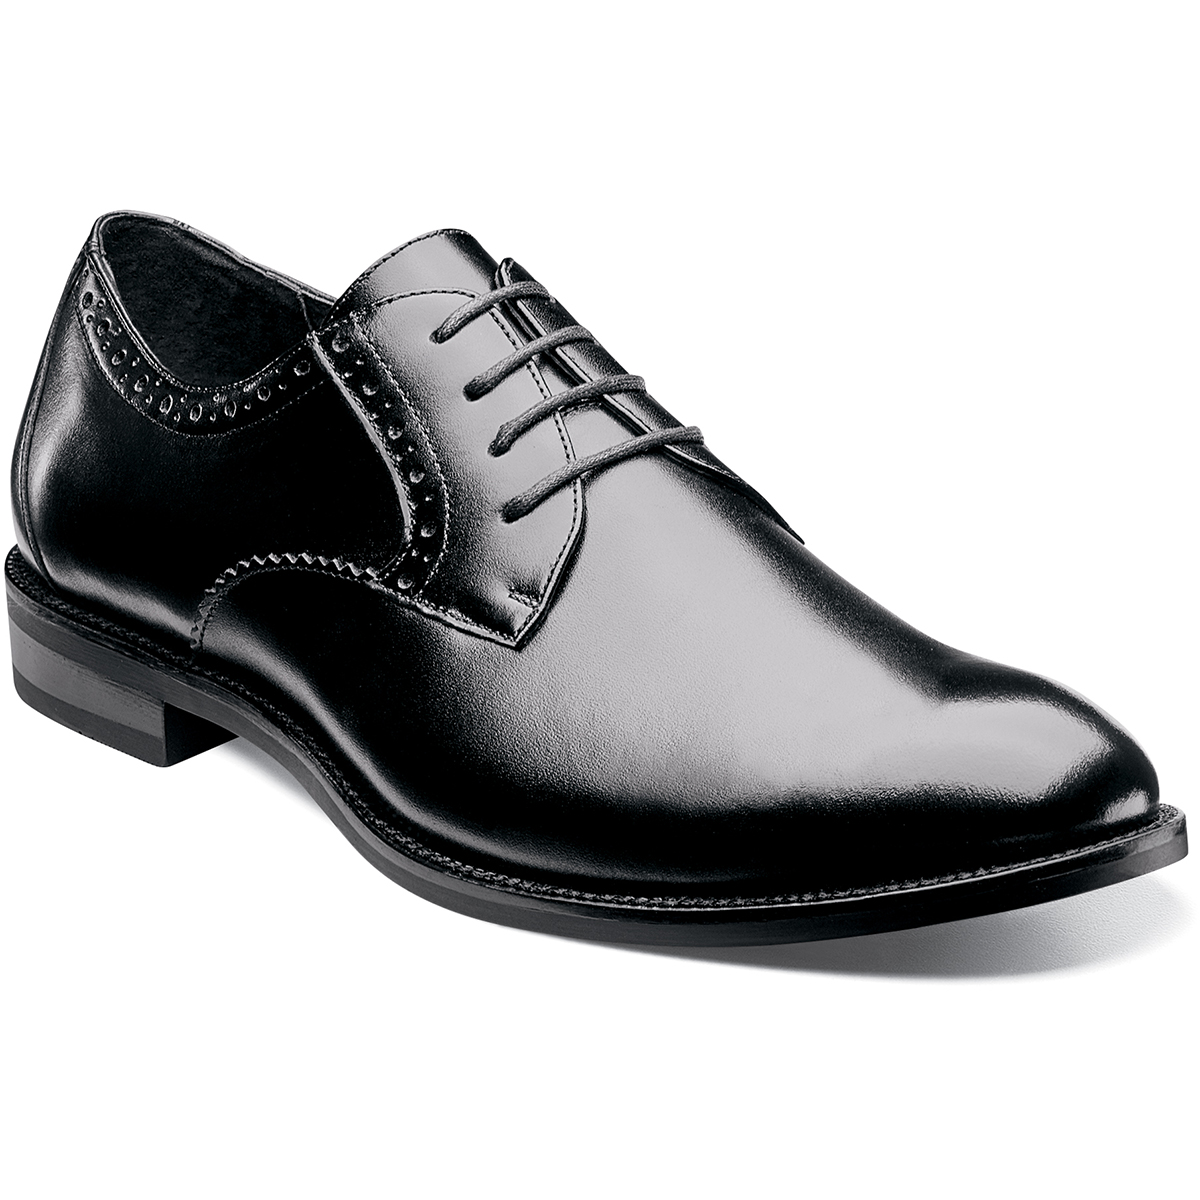 Men's Dress Shoes | Black Plain Toe Oxford | Stacy Adams Graham